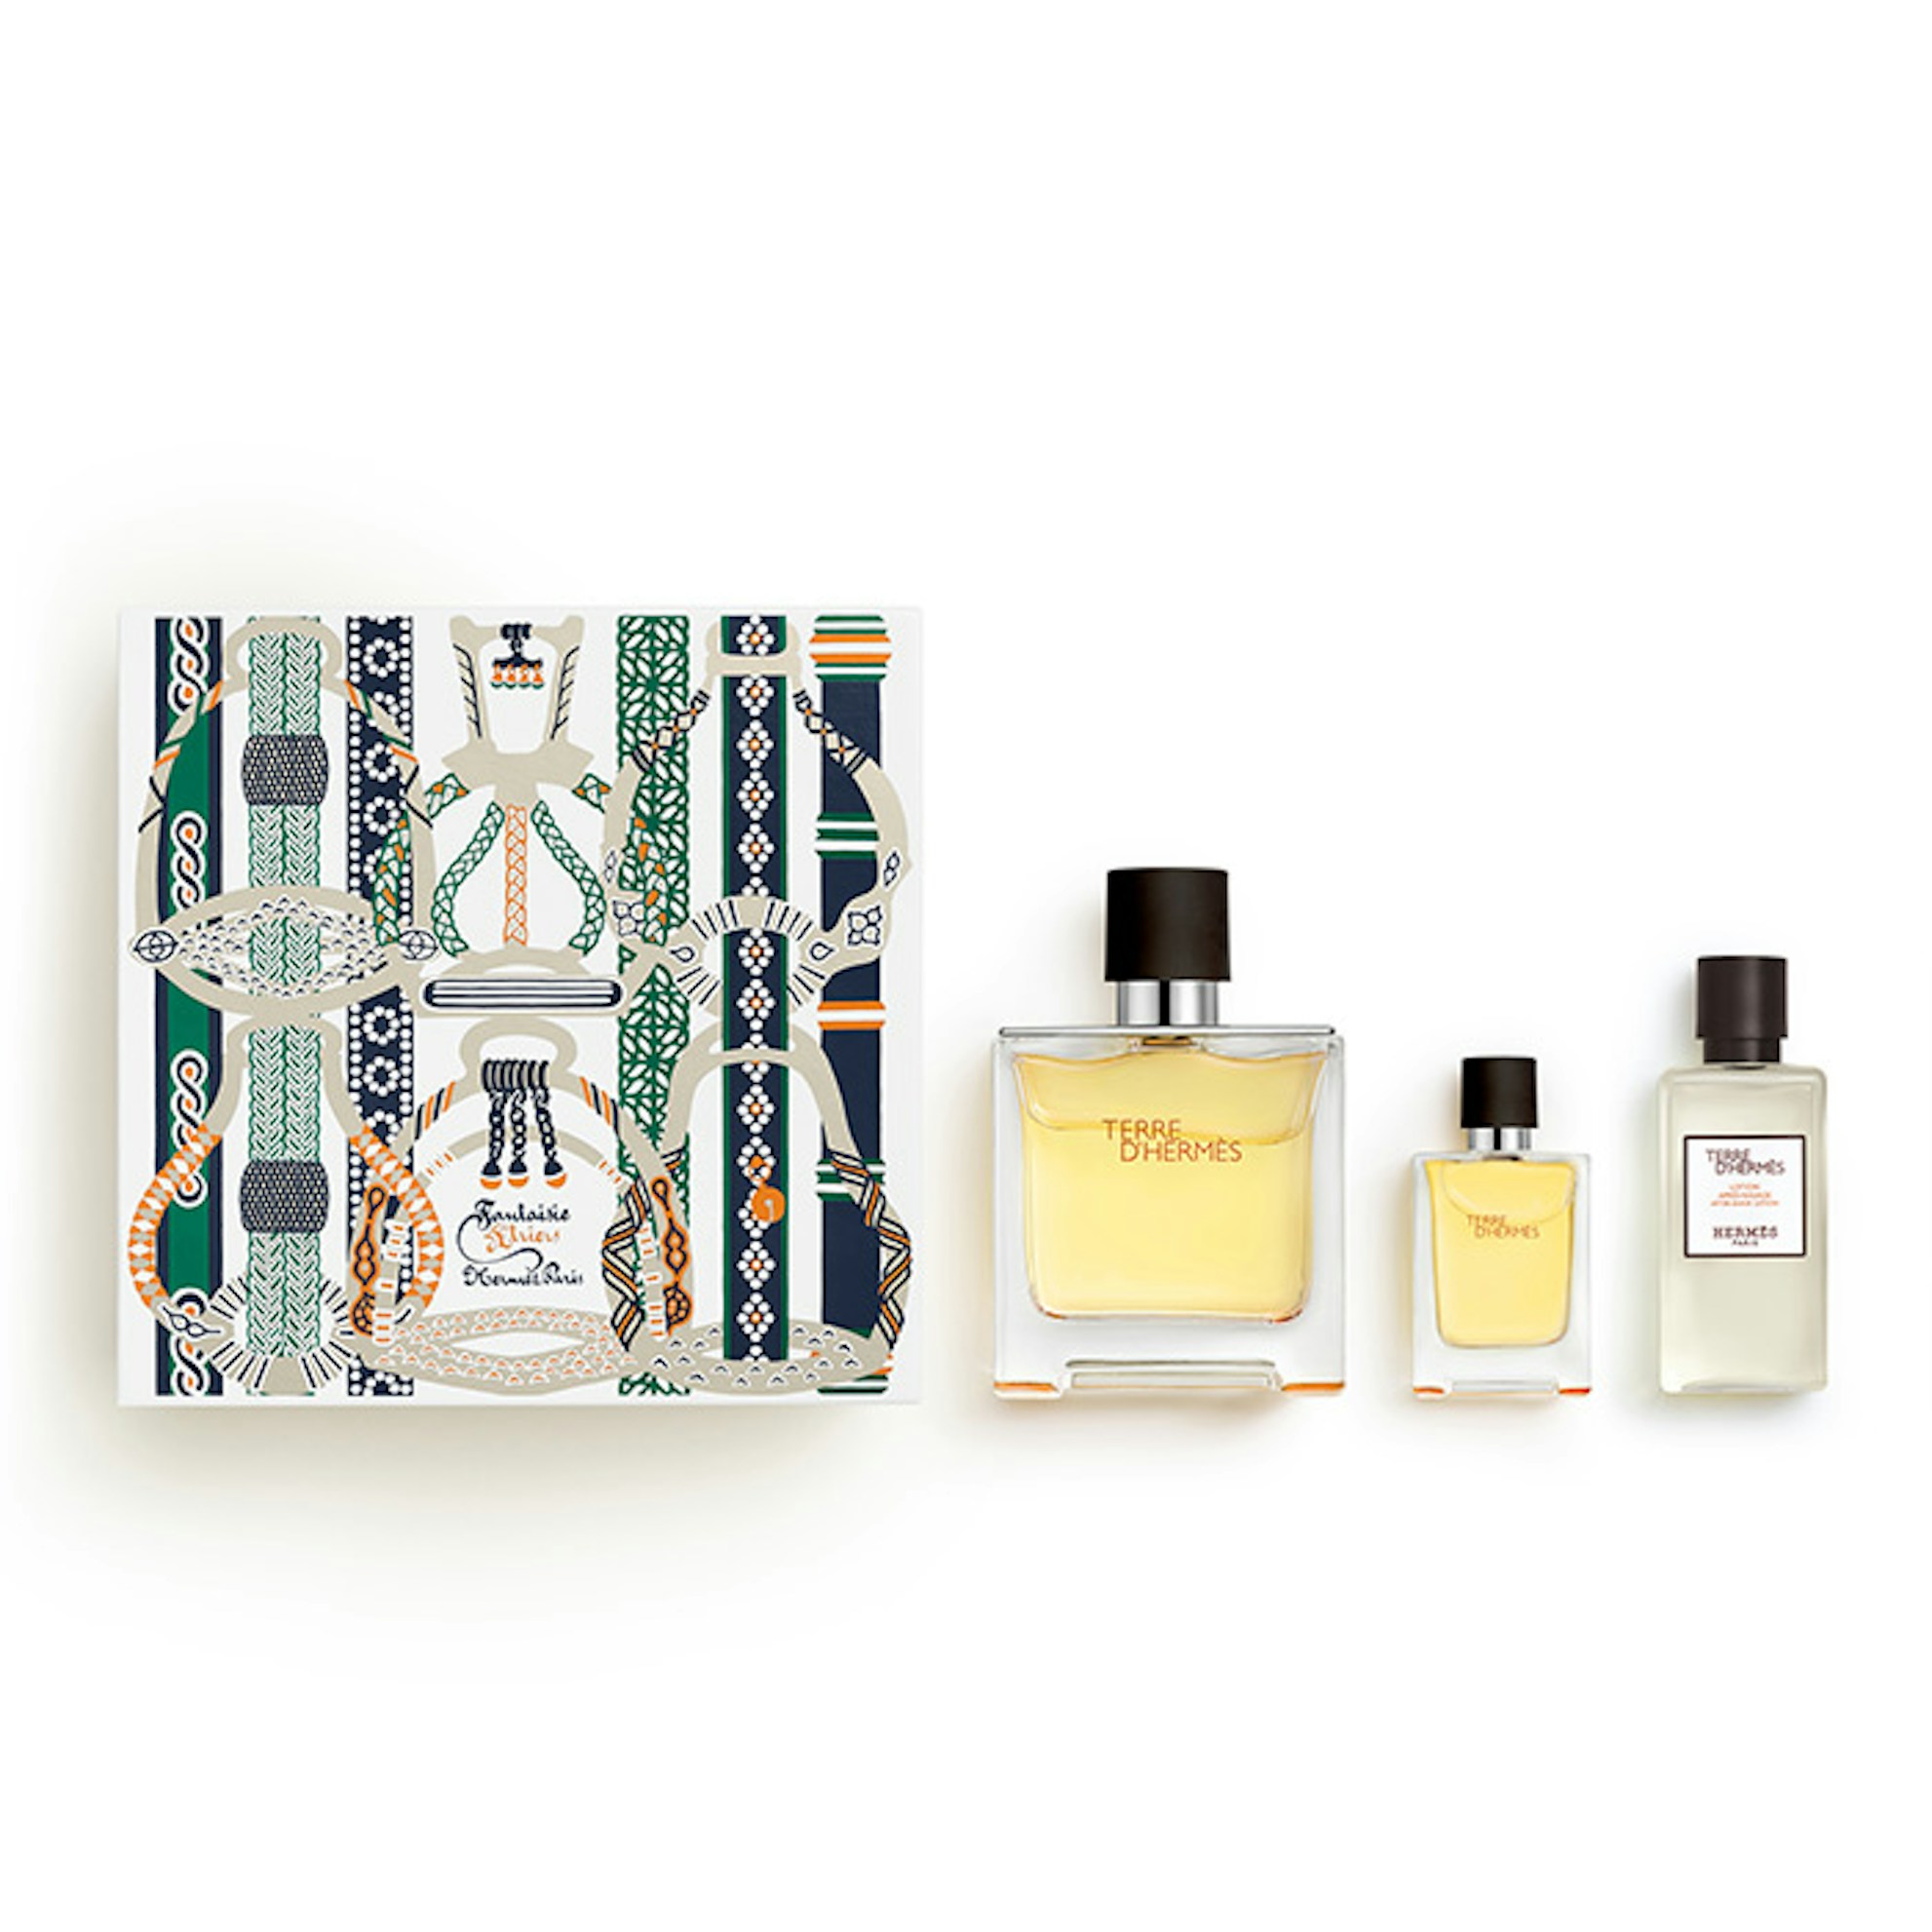 HERMÈS Terre d'Hermès Eau de Parfum 75ml Christmas Gift Set